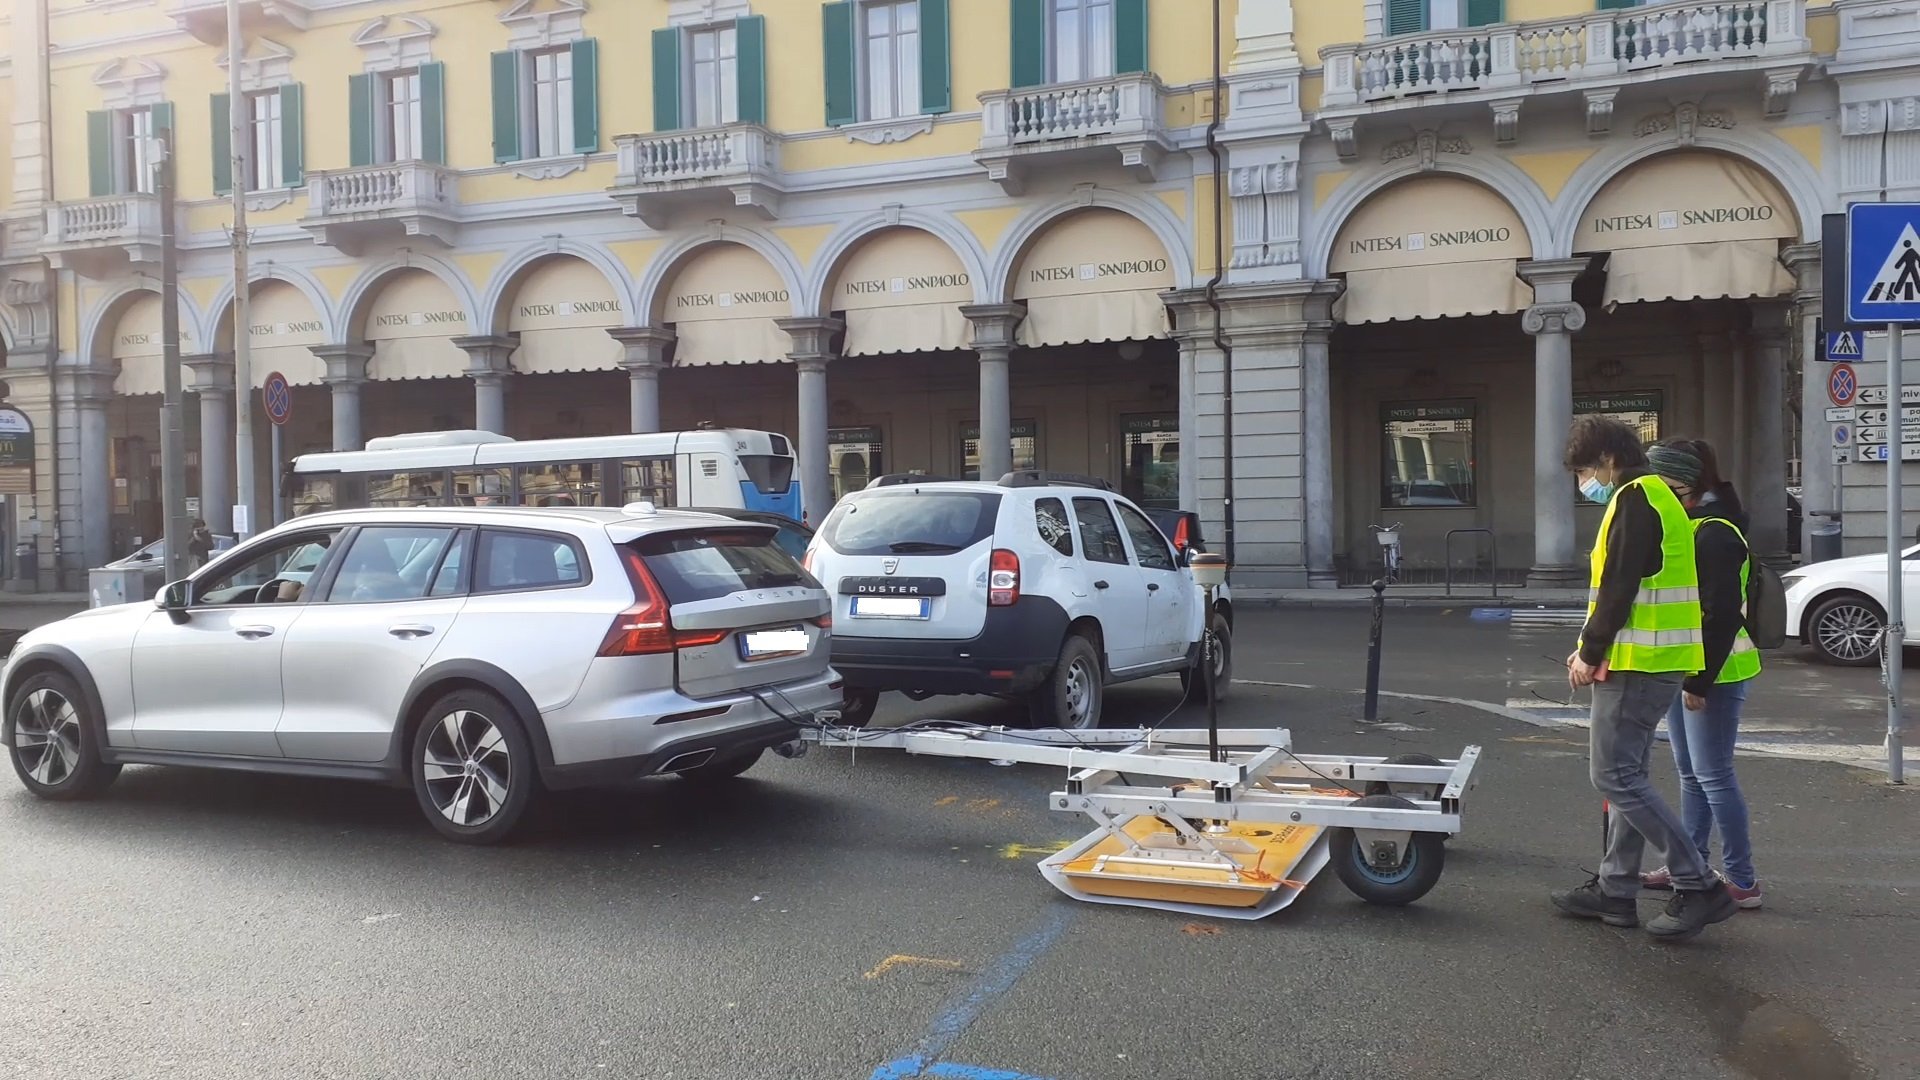 Parcheggio vietato in mezza piazza Garibaldi: proseguono le ispezioni sotterranee col georadar